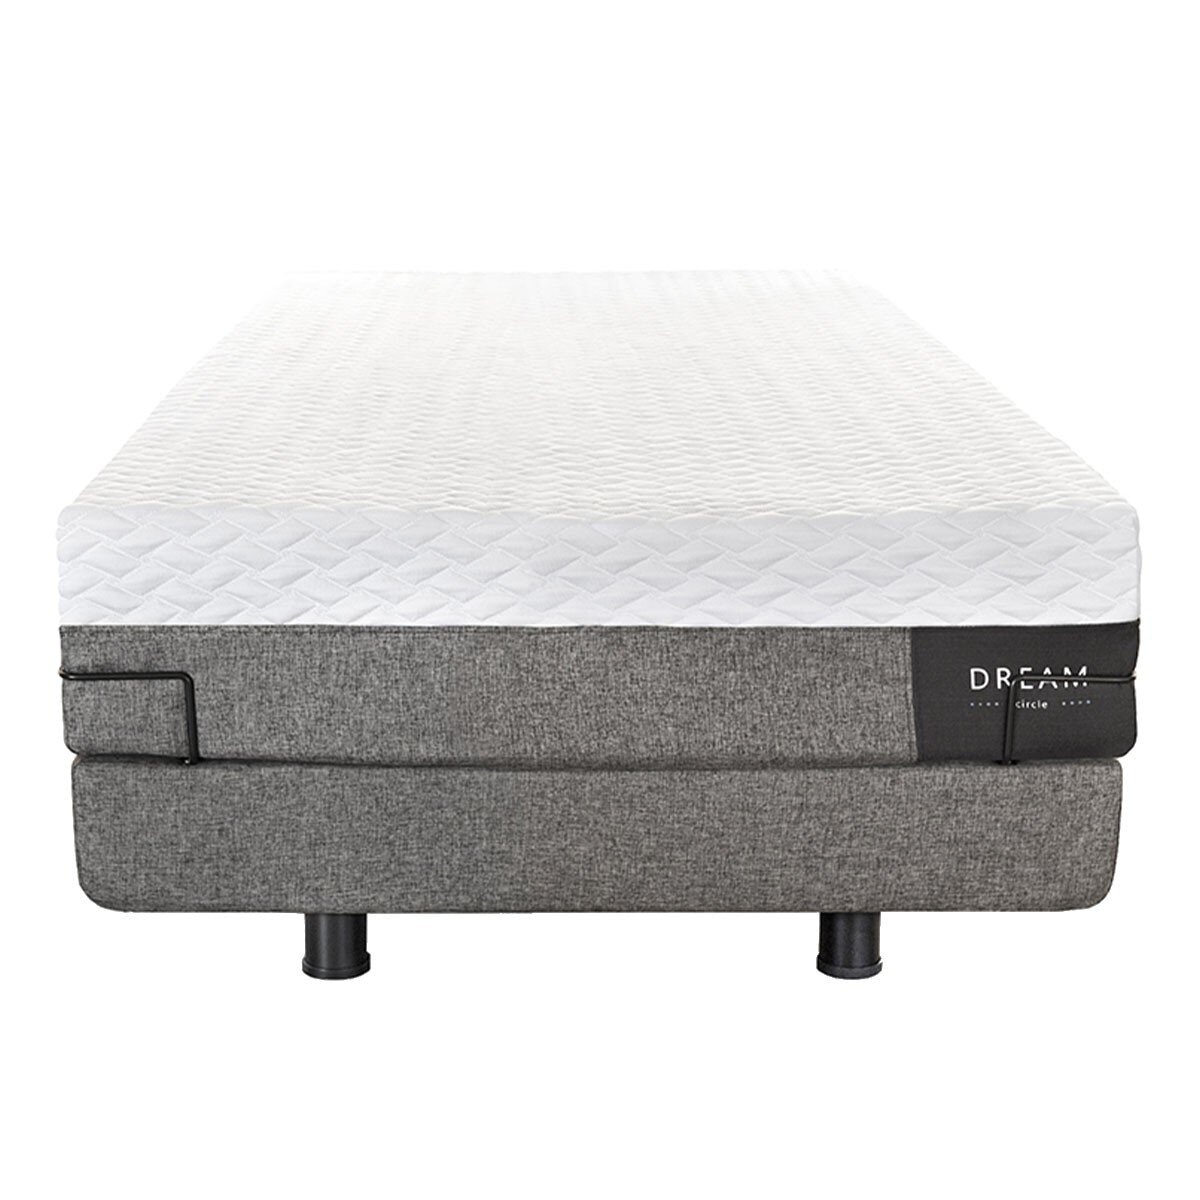 幻知曲 R450 標準單人睡眠系統 贈保潔墊 90公分 X 200公分